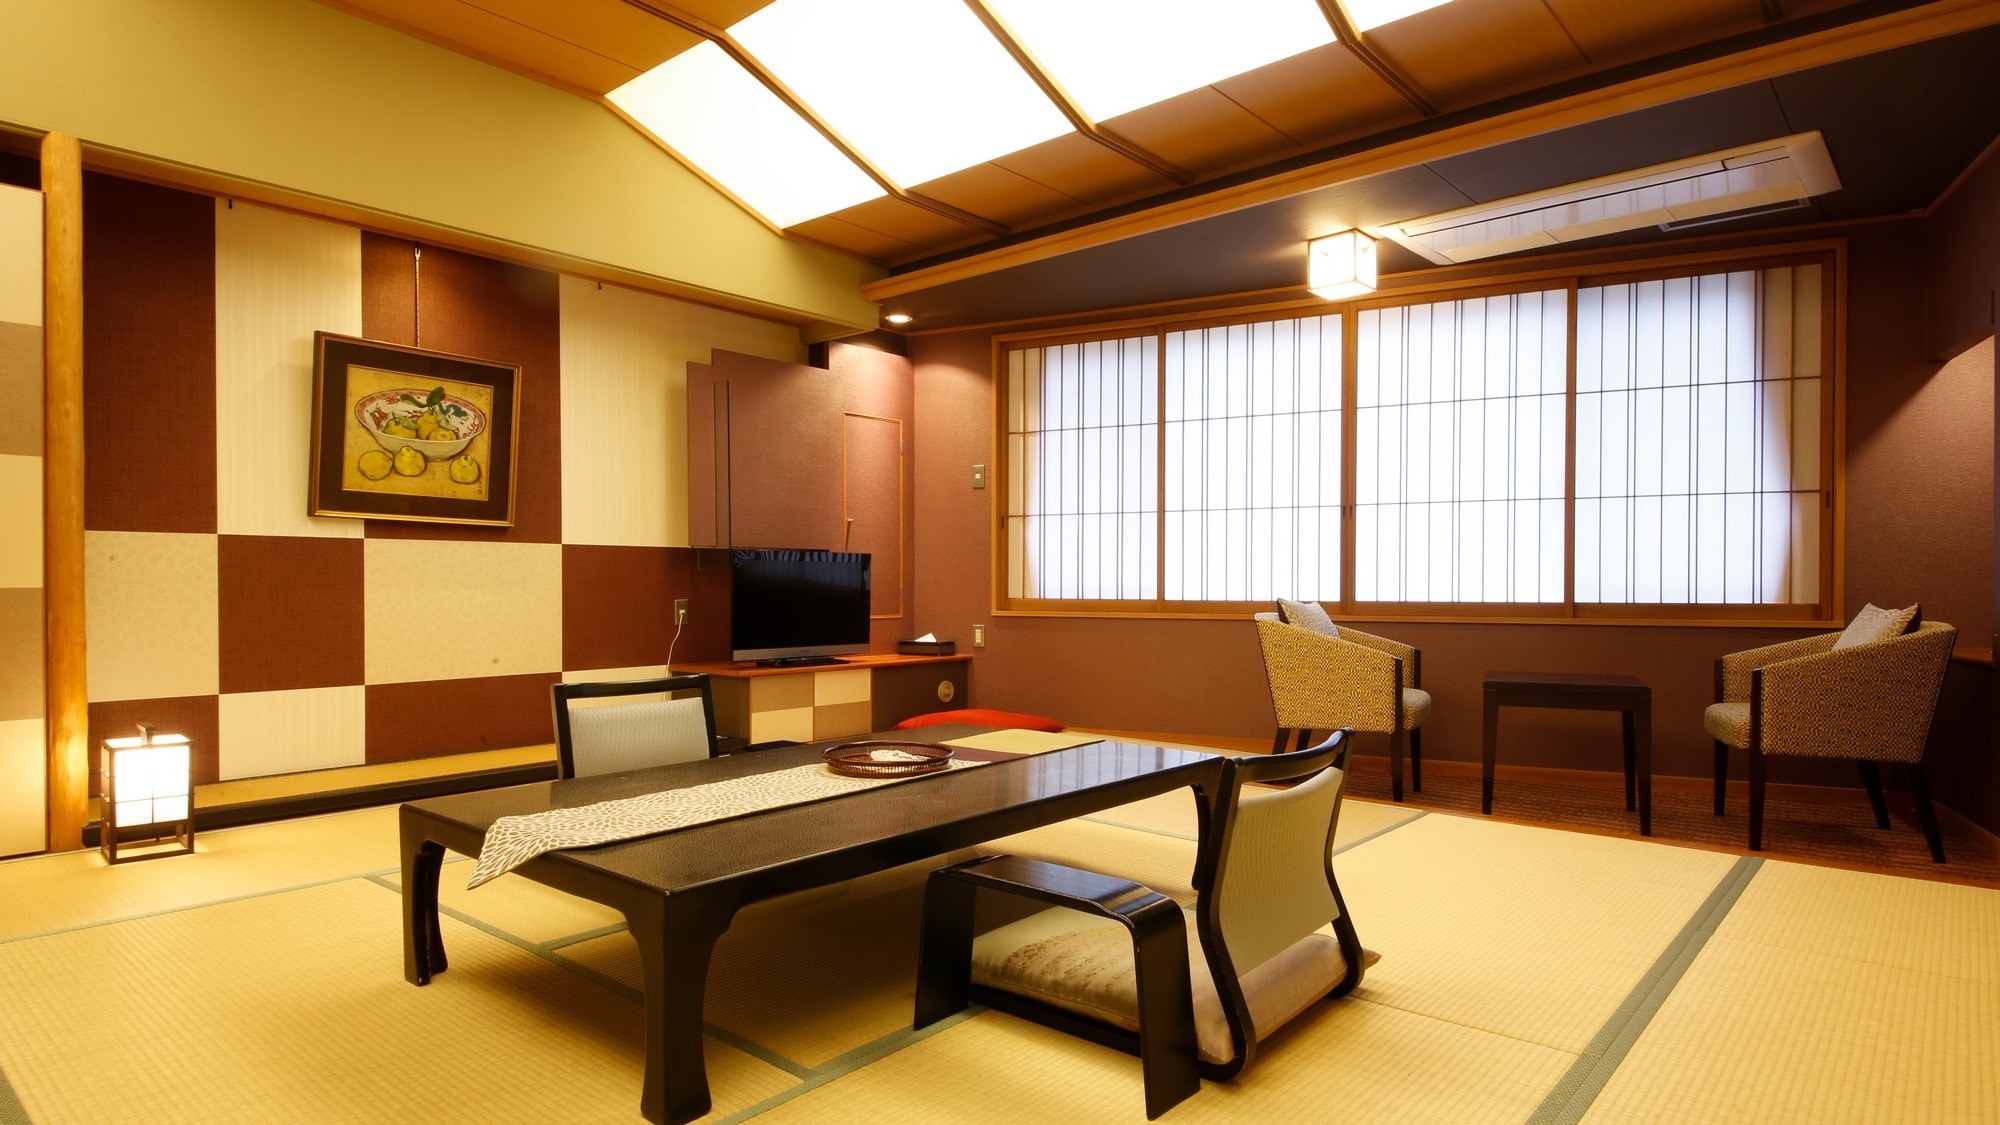 ห้องพักดีลักซ์สไตล์ญี่ปุ่นที่หรูหราทันสมัย <Checkered-ICHIMATSU> โดดเด่นด้วยลายตารางหมากรุกแบบครบวงจรและสีแดงที่ให้ความรู้สึกสงบ